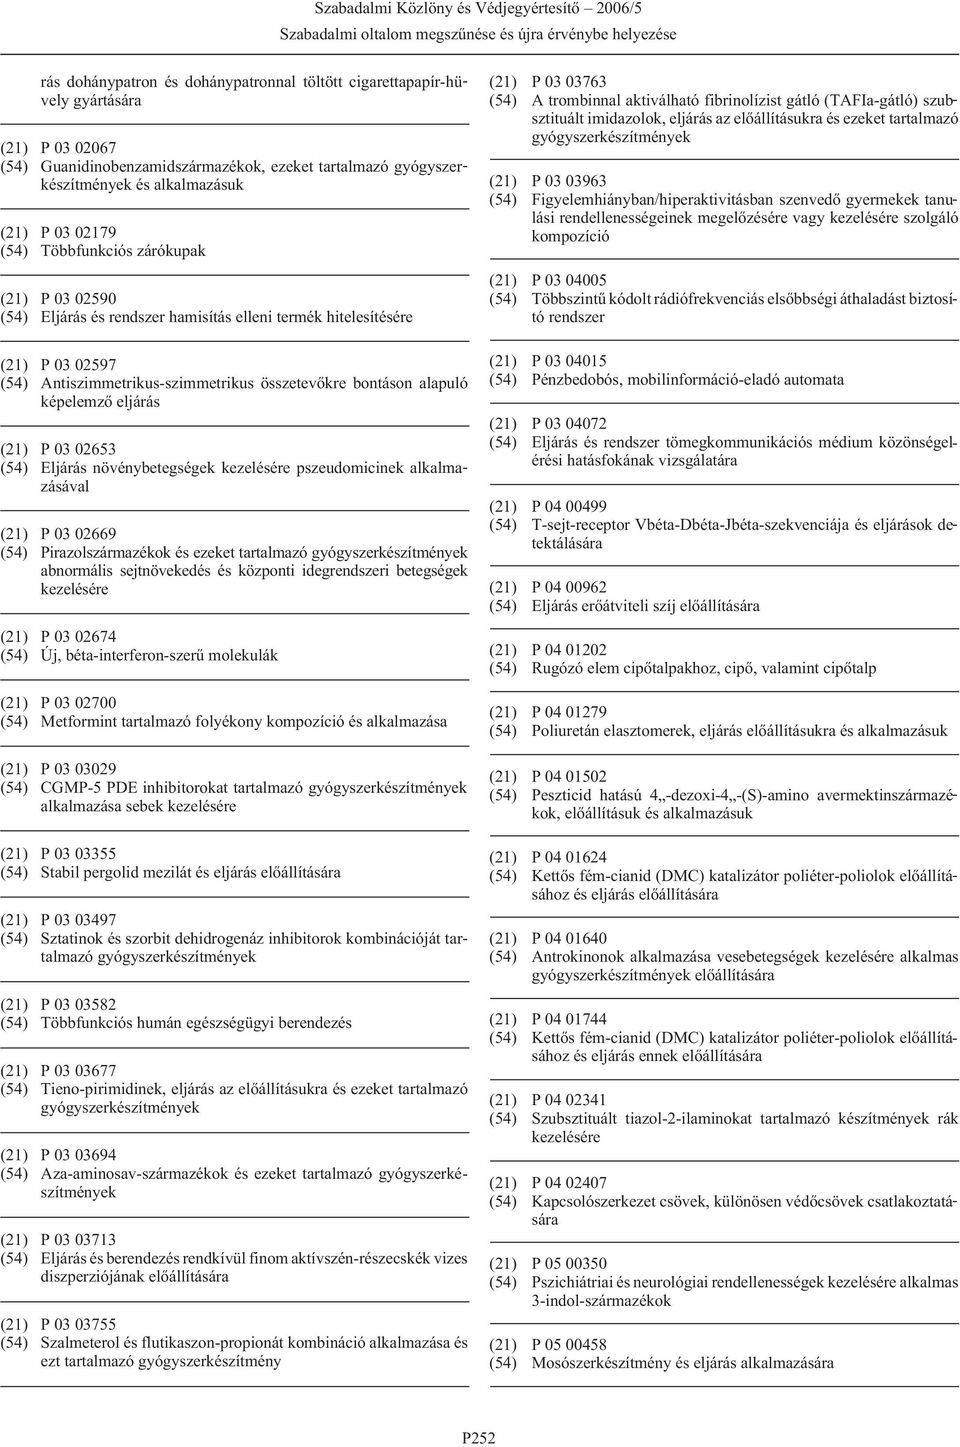 02653 (54) Eljárás növénybetegségek kezelésére pszeudomicinek alkalmazásával (21) P 03 02669 (54) Pirazolszármazékok és ezeket tartalmazó abnormális sejtnövekedés és központi idegrendszeri betegségek